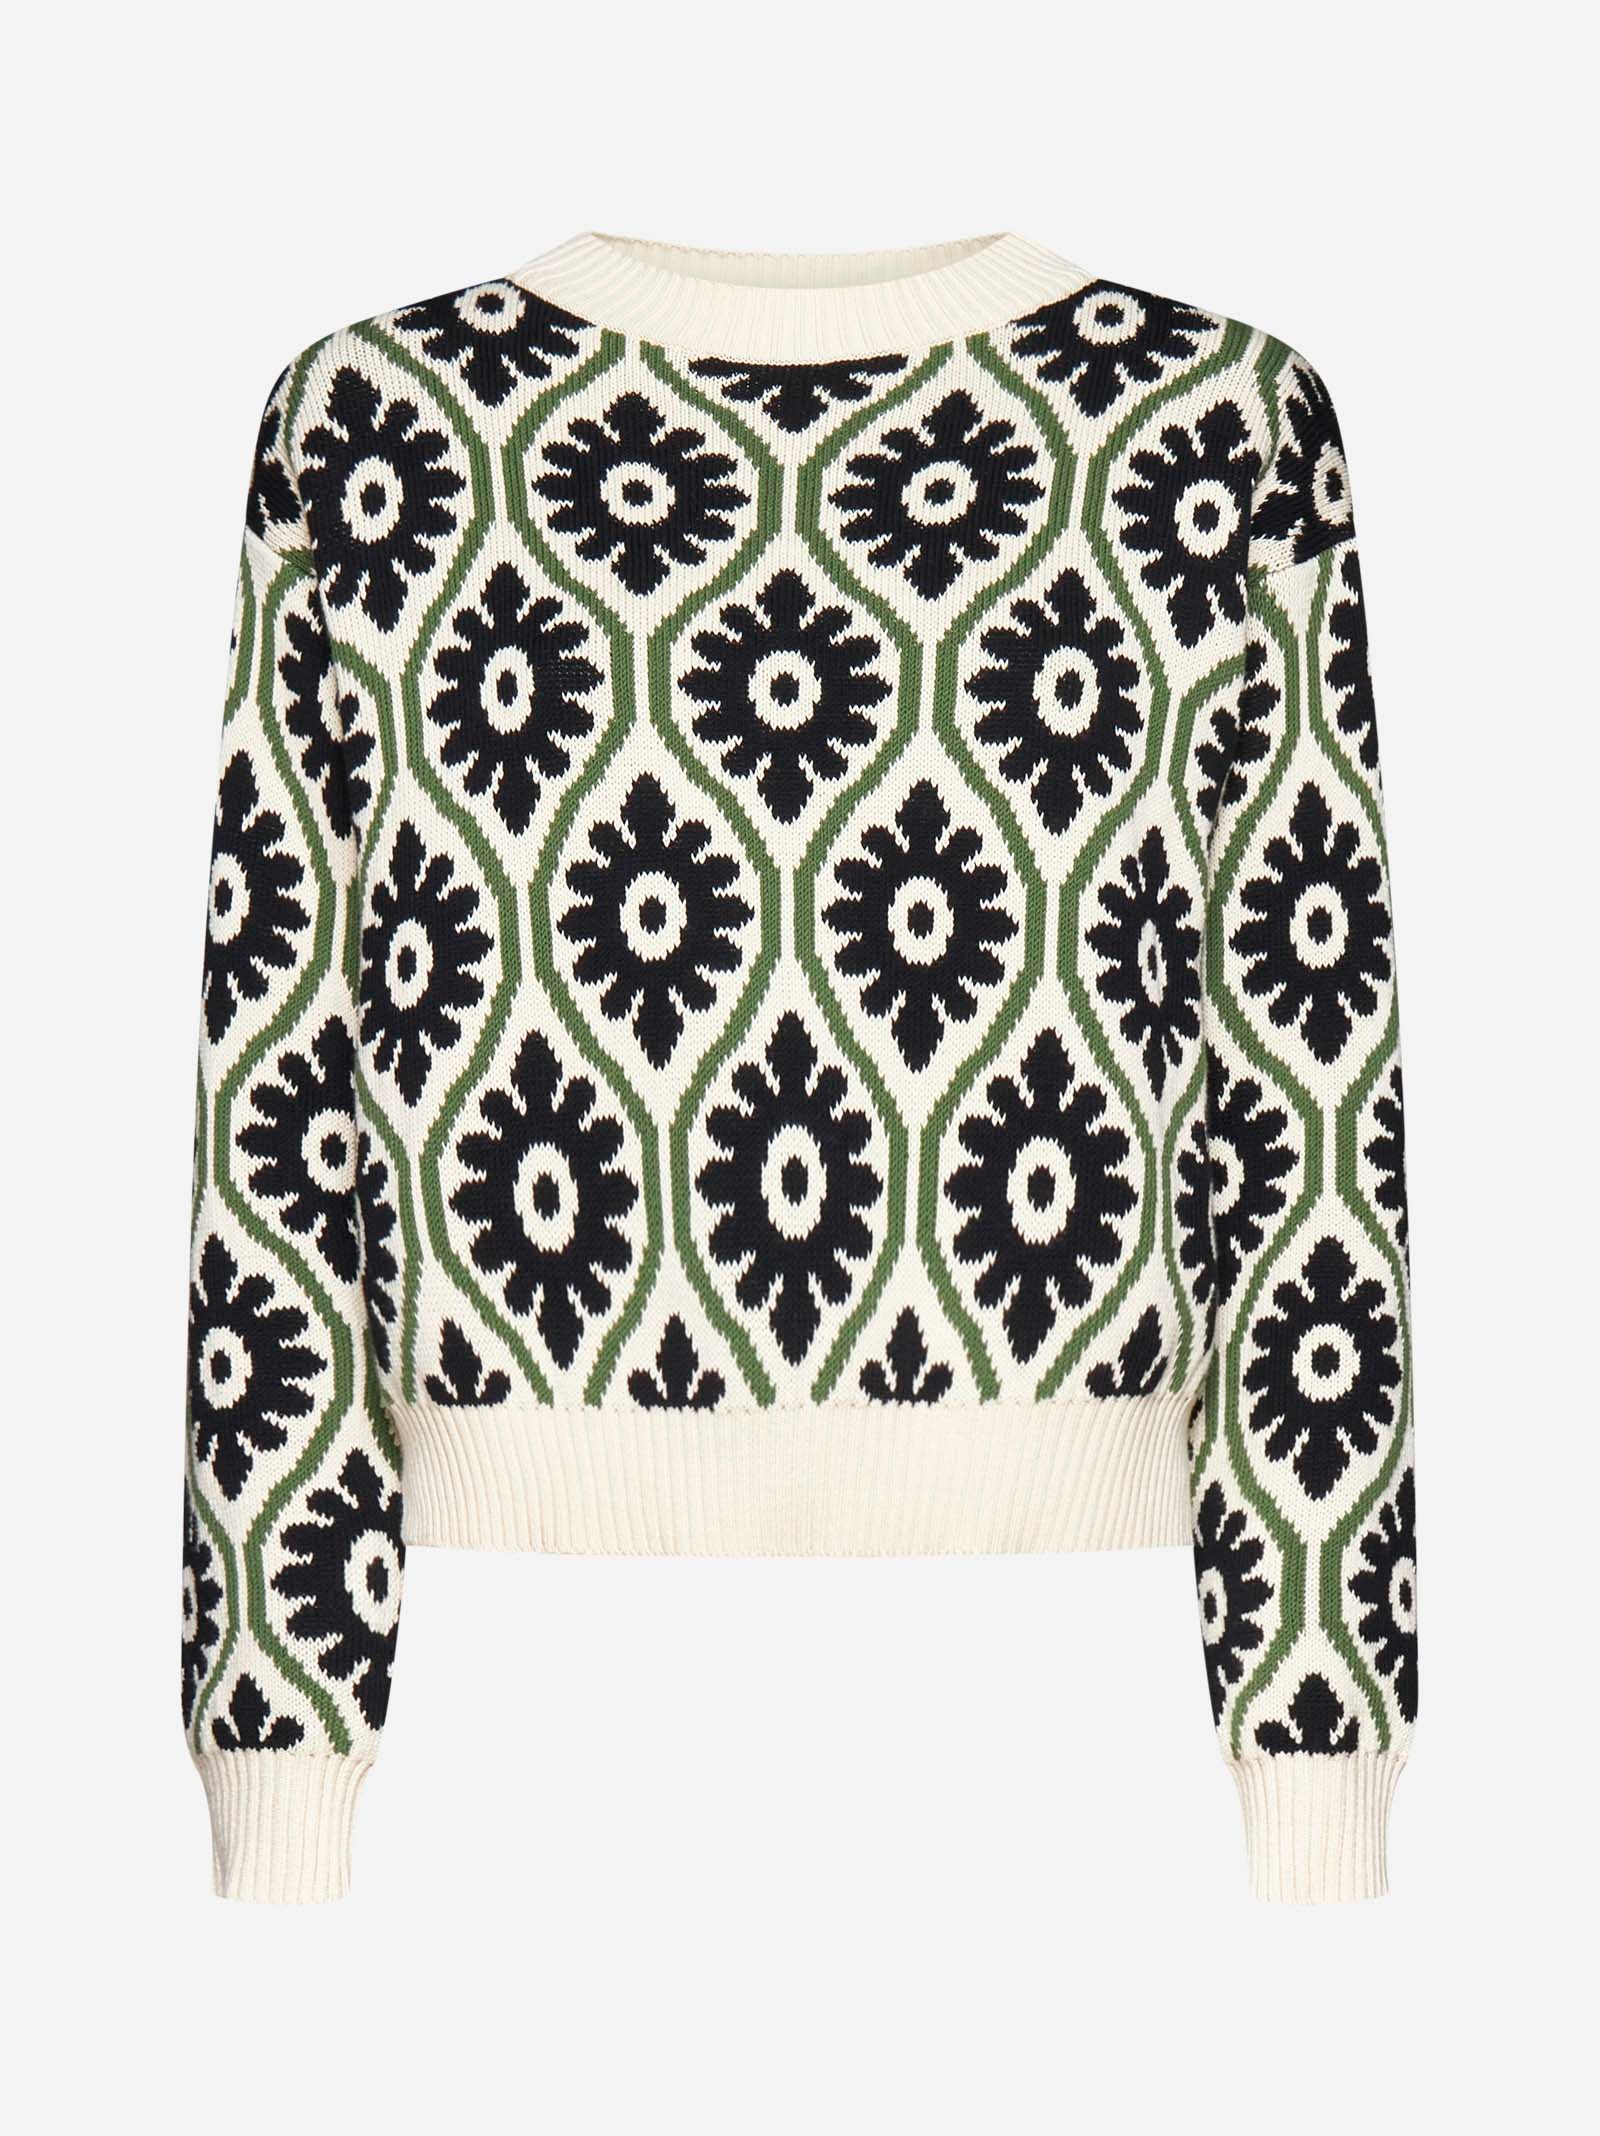 Maxmara LTD Tavola floral jacquard sweater